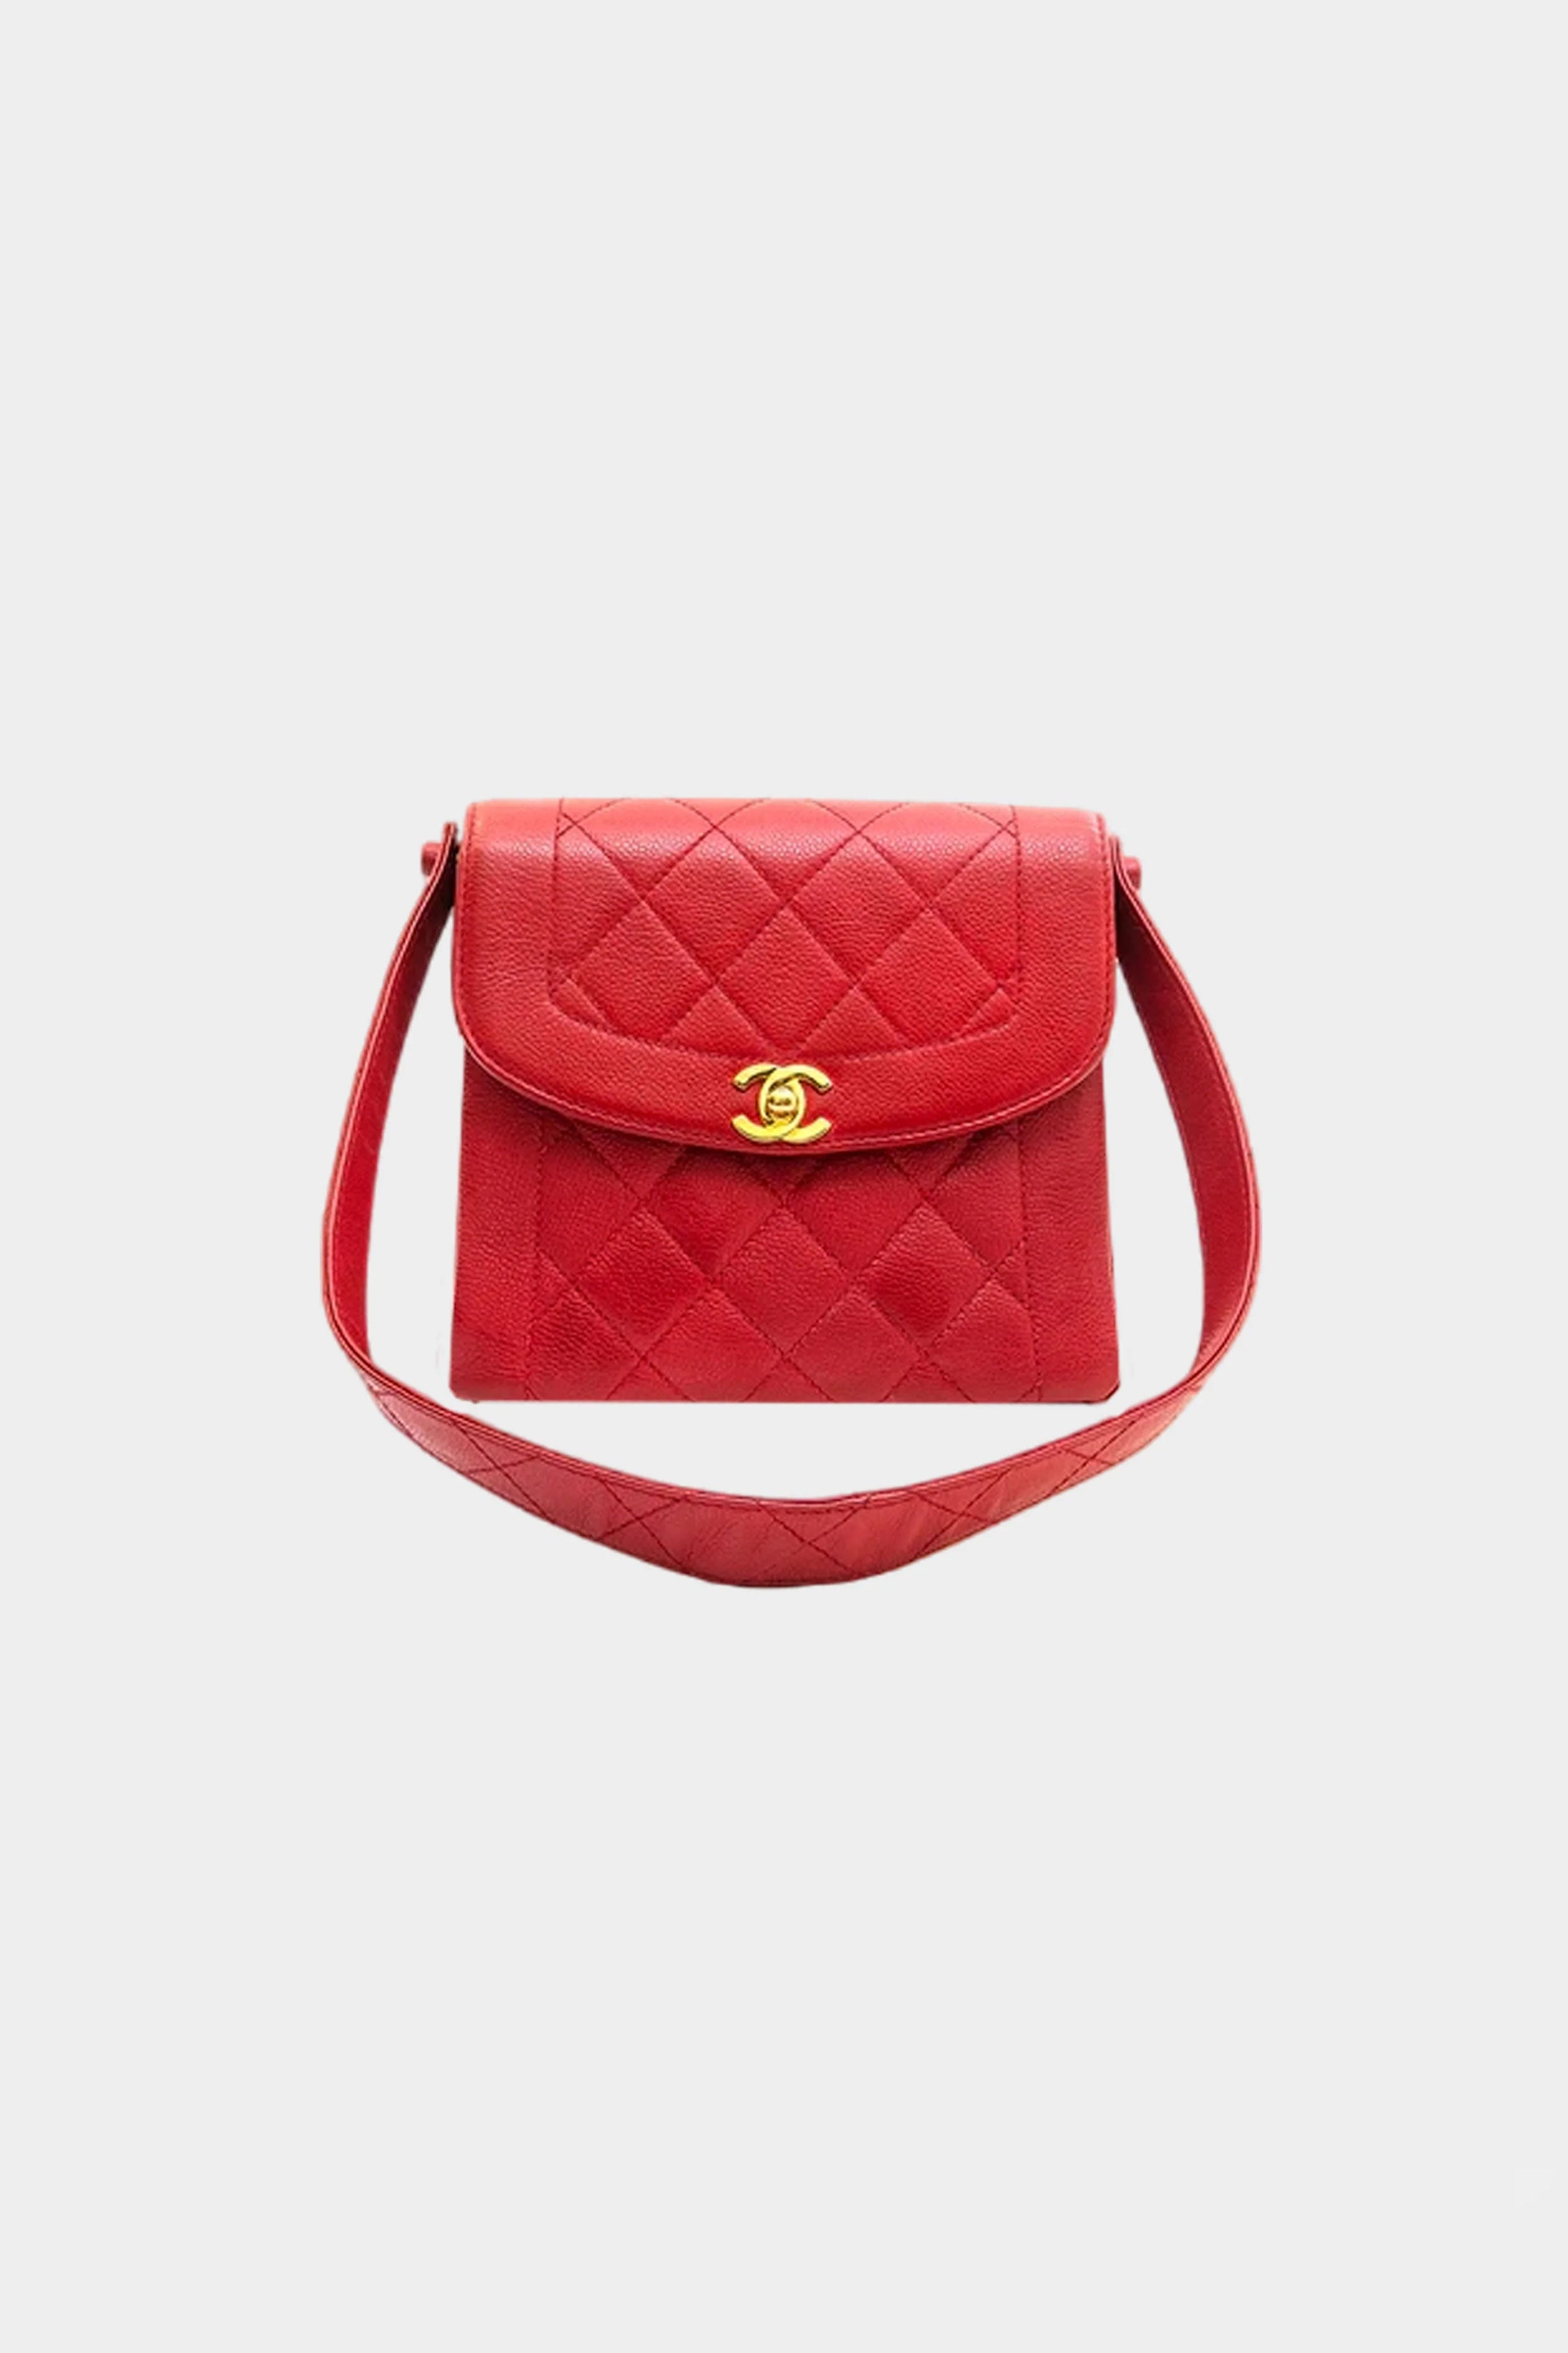 chanel vintage red bag